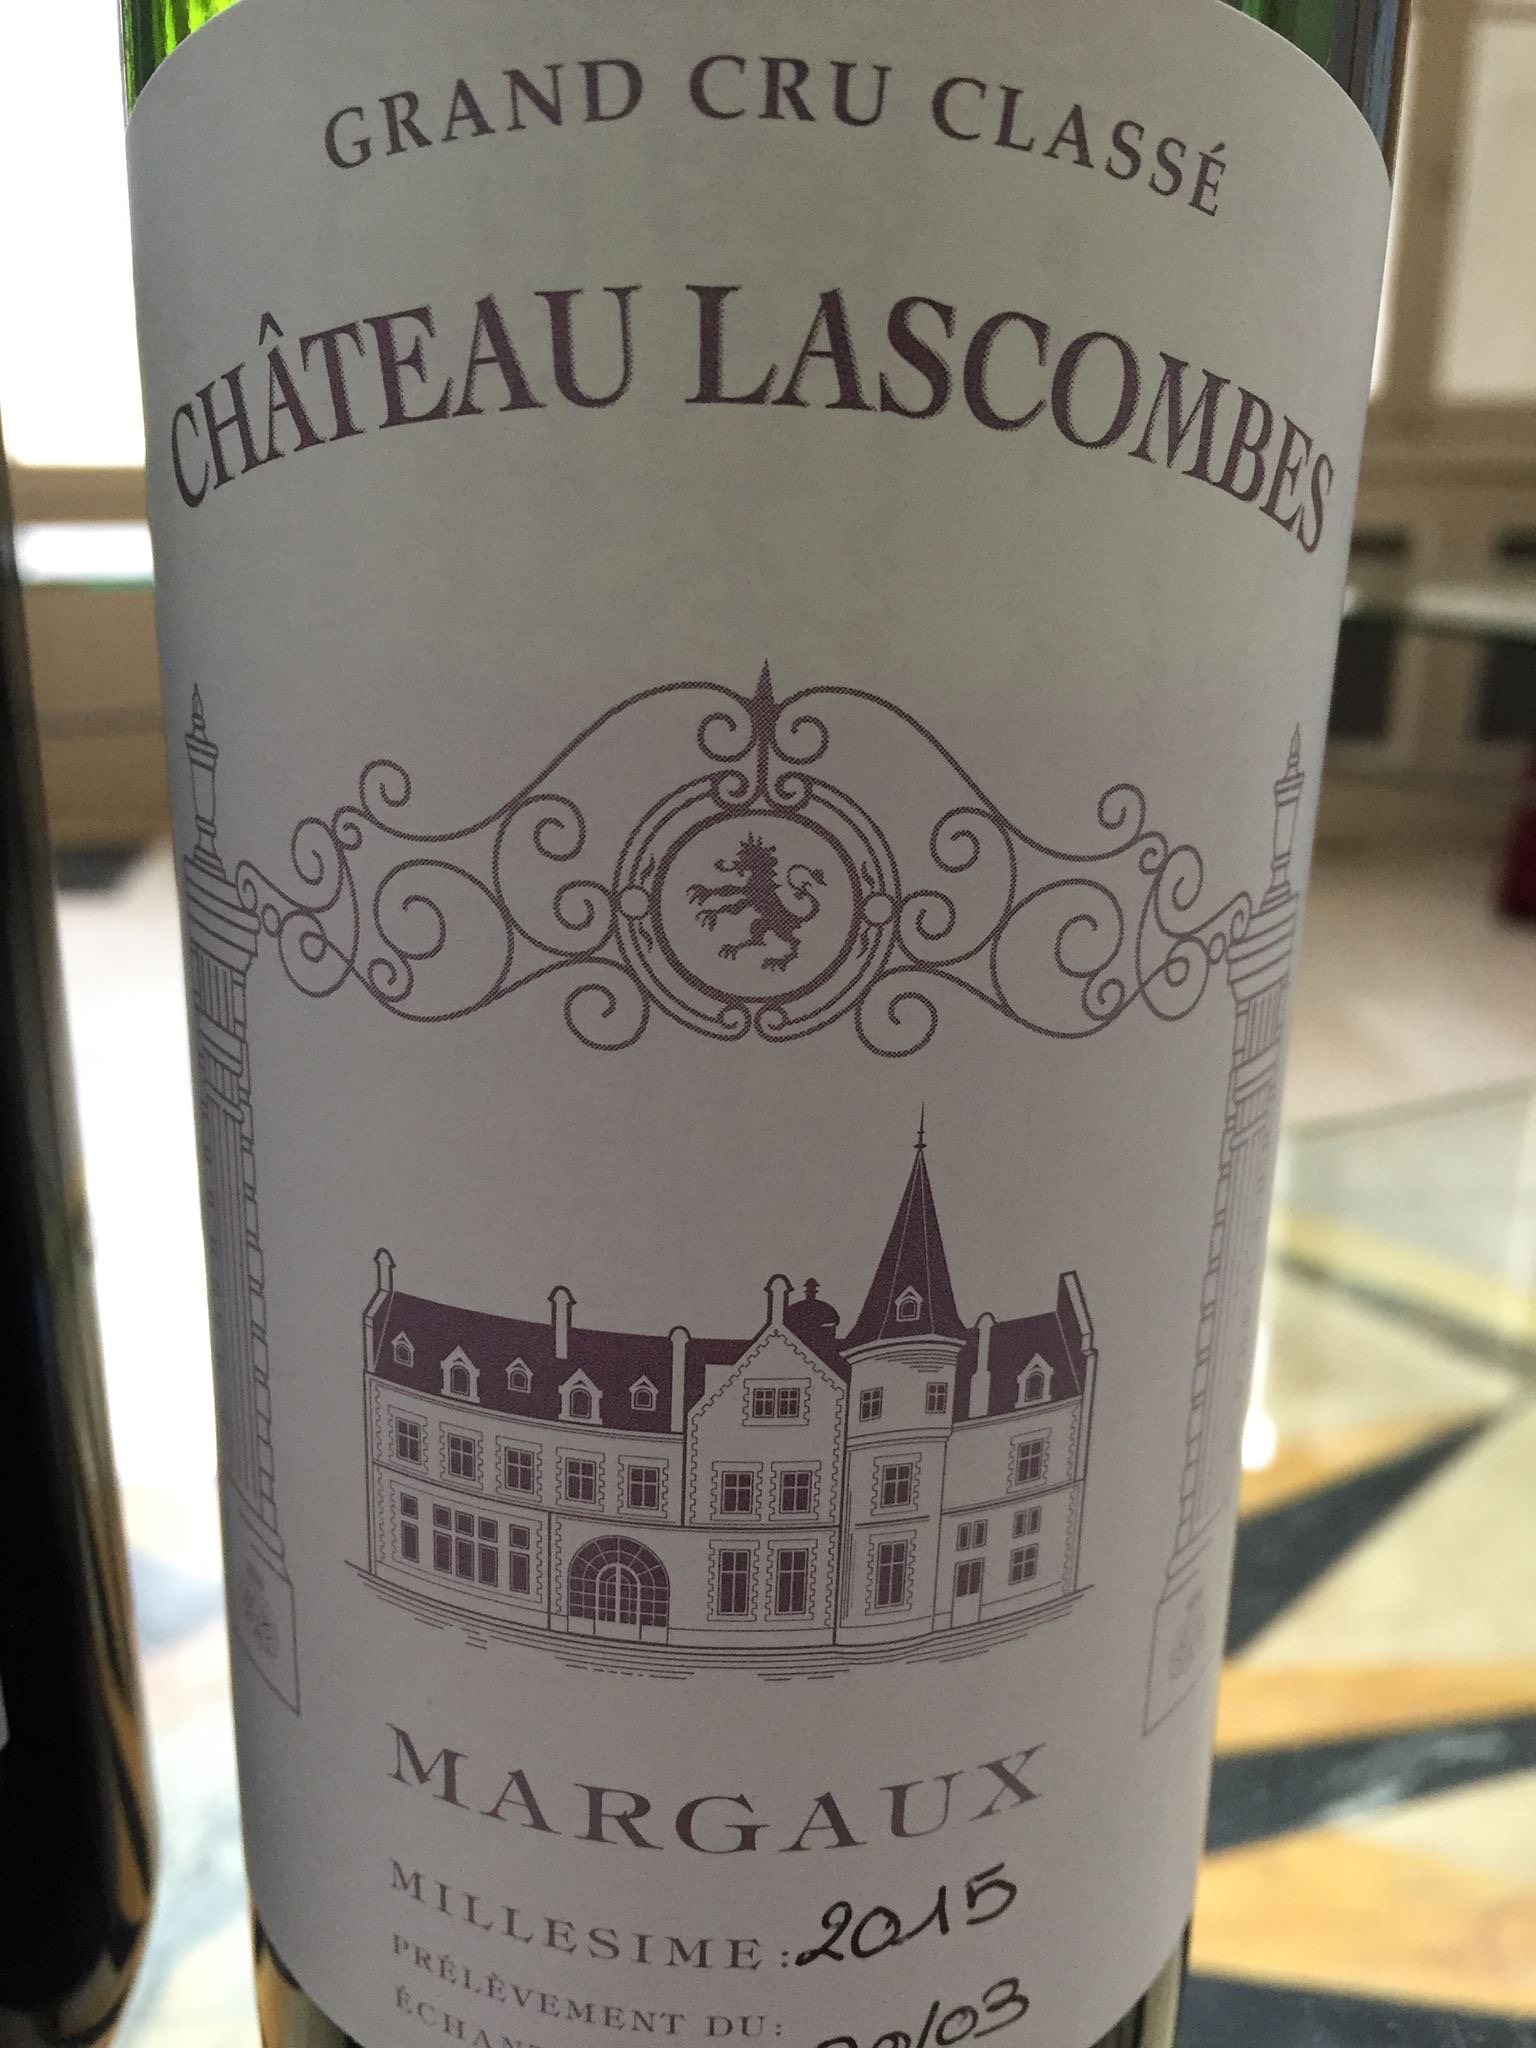 Château Lascombes 2015 – Margaux, 2nd Grand Cru Classé